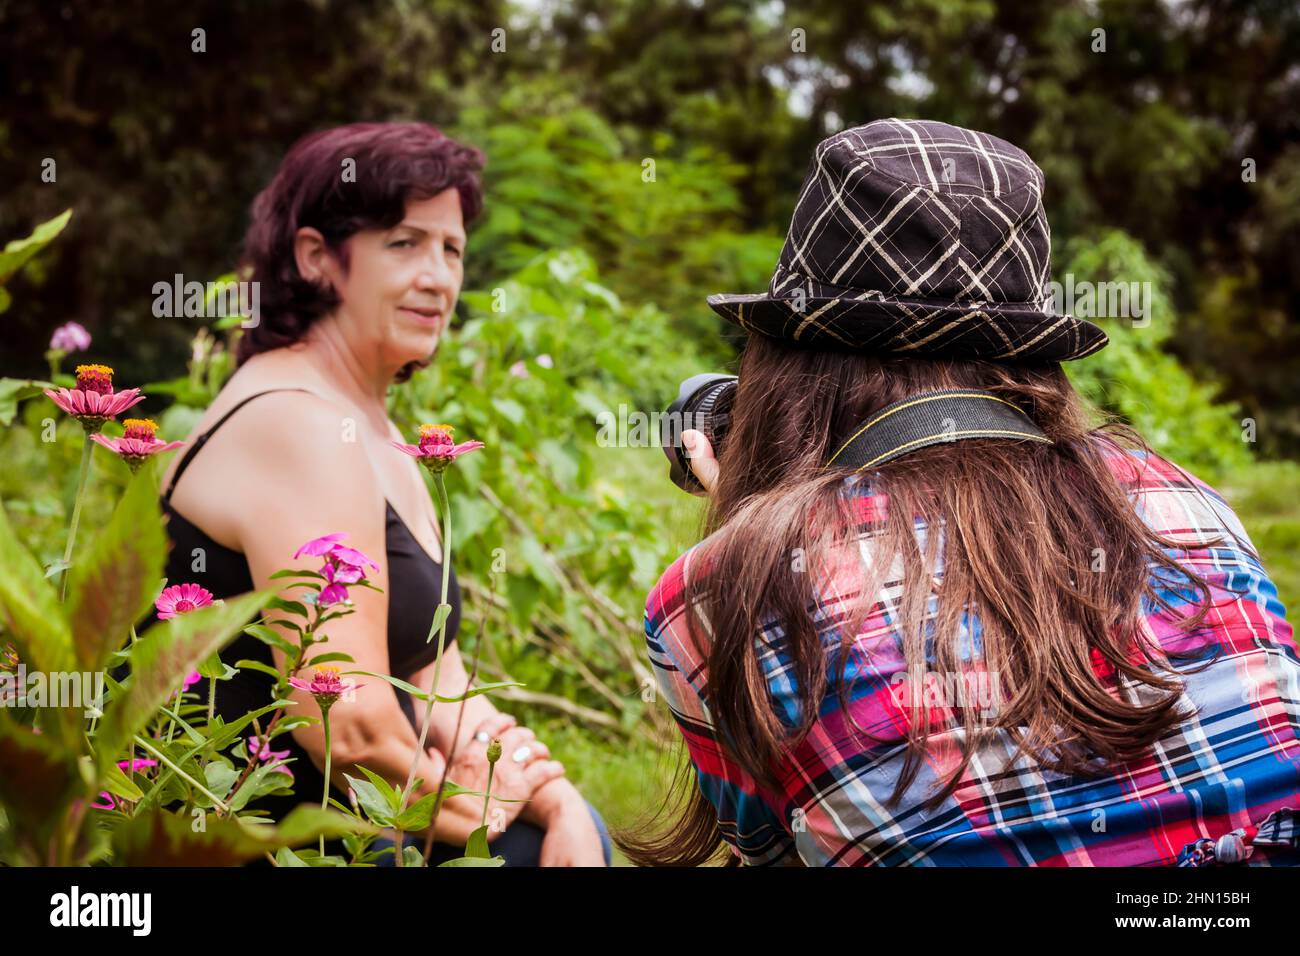 Nahaufnahme des Rückens einer jungen Fotografin mit langen braunen Haaren und einem Hut, der mit ihrer Linse auf eine Erwachsene lateinische Frau in einem Garten zielt Stockfoto